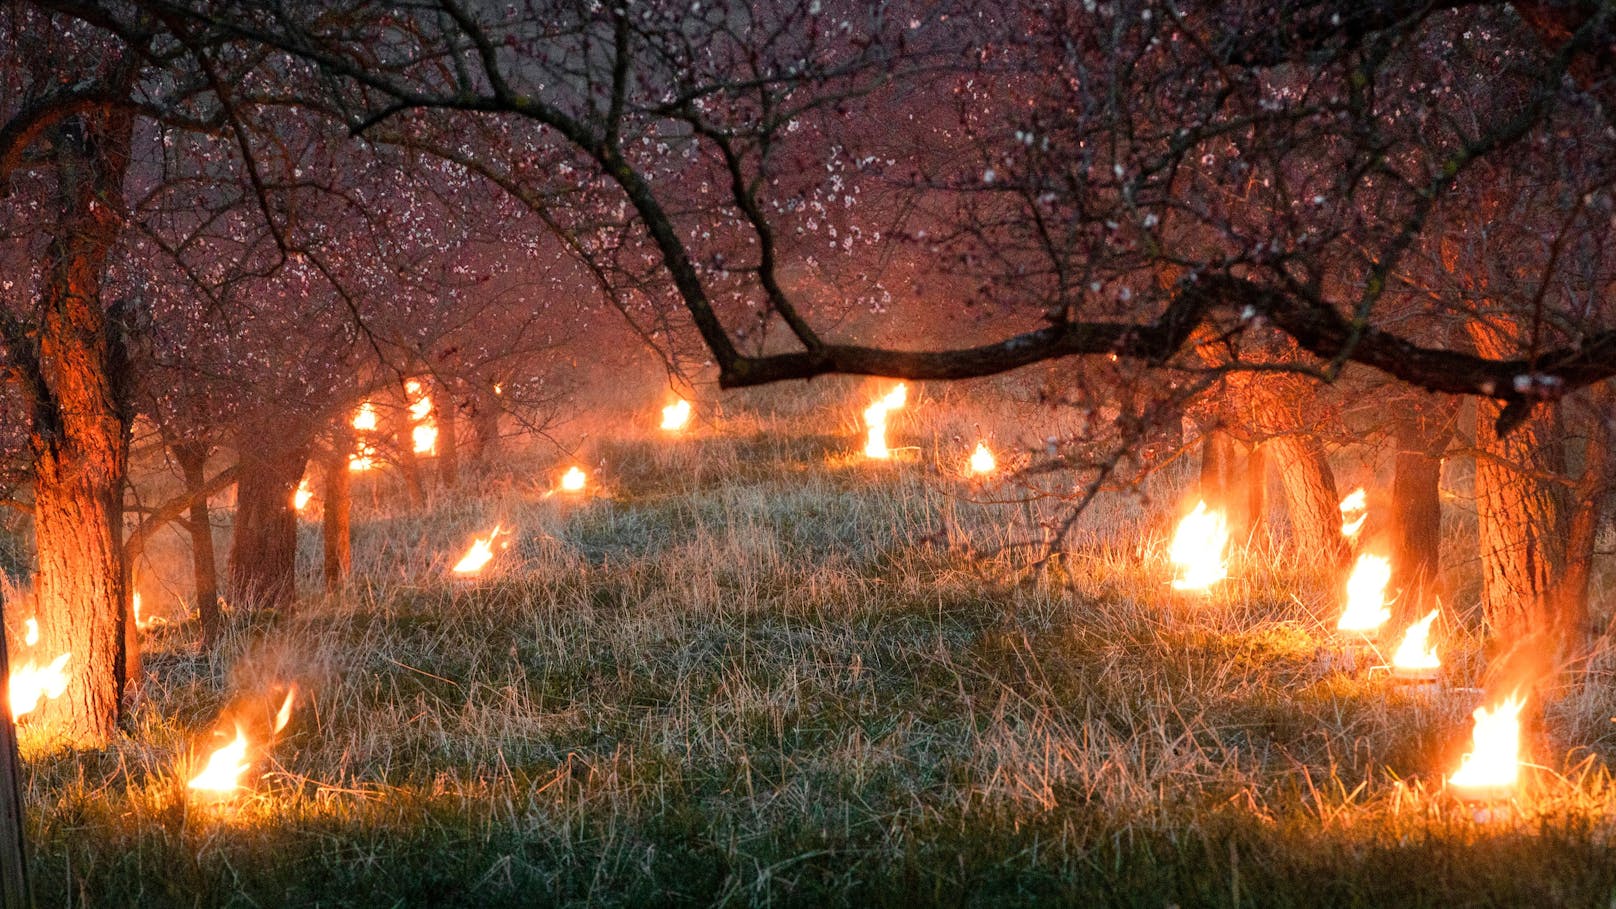 Heizkerzen zum Schutz der Wachauer Marillenblüte vor dem Nachtfrost. Archivbild.